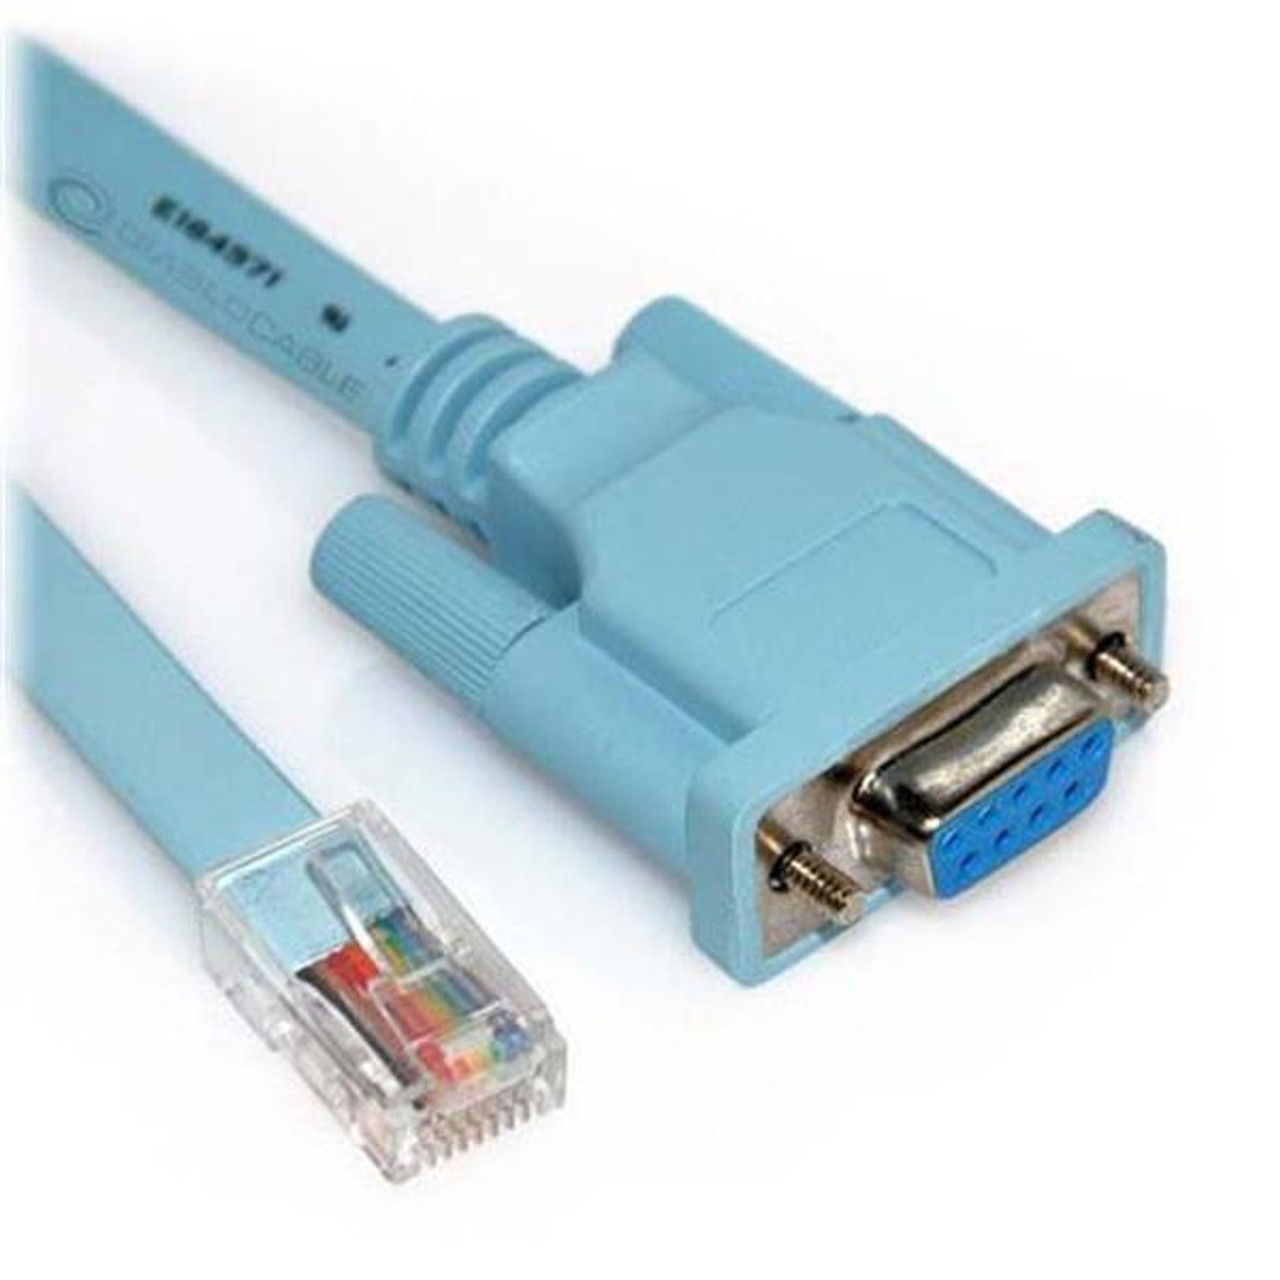 72-3383-01 - Cisco 1700 Series Console Cable Rj45 Lt Blue 6ft